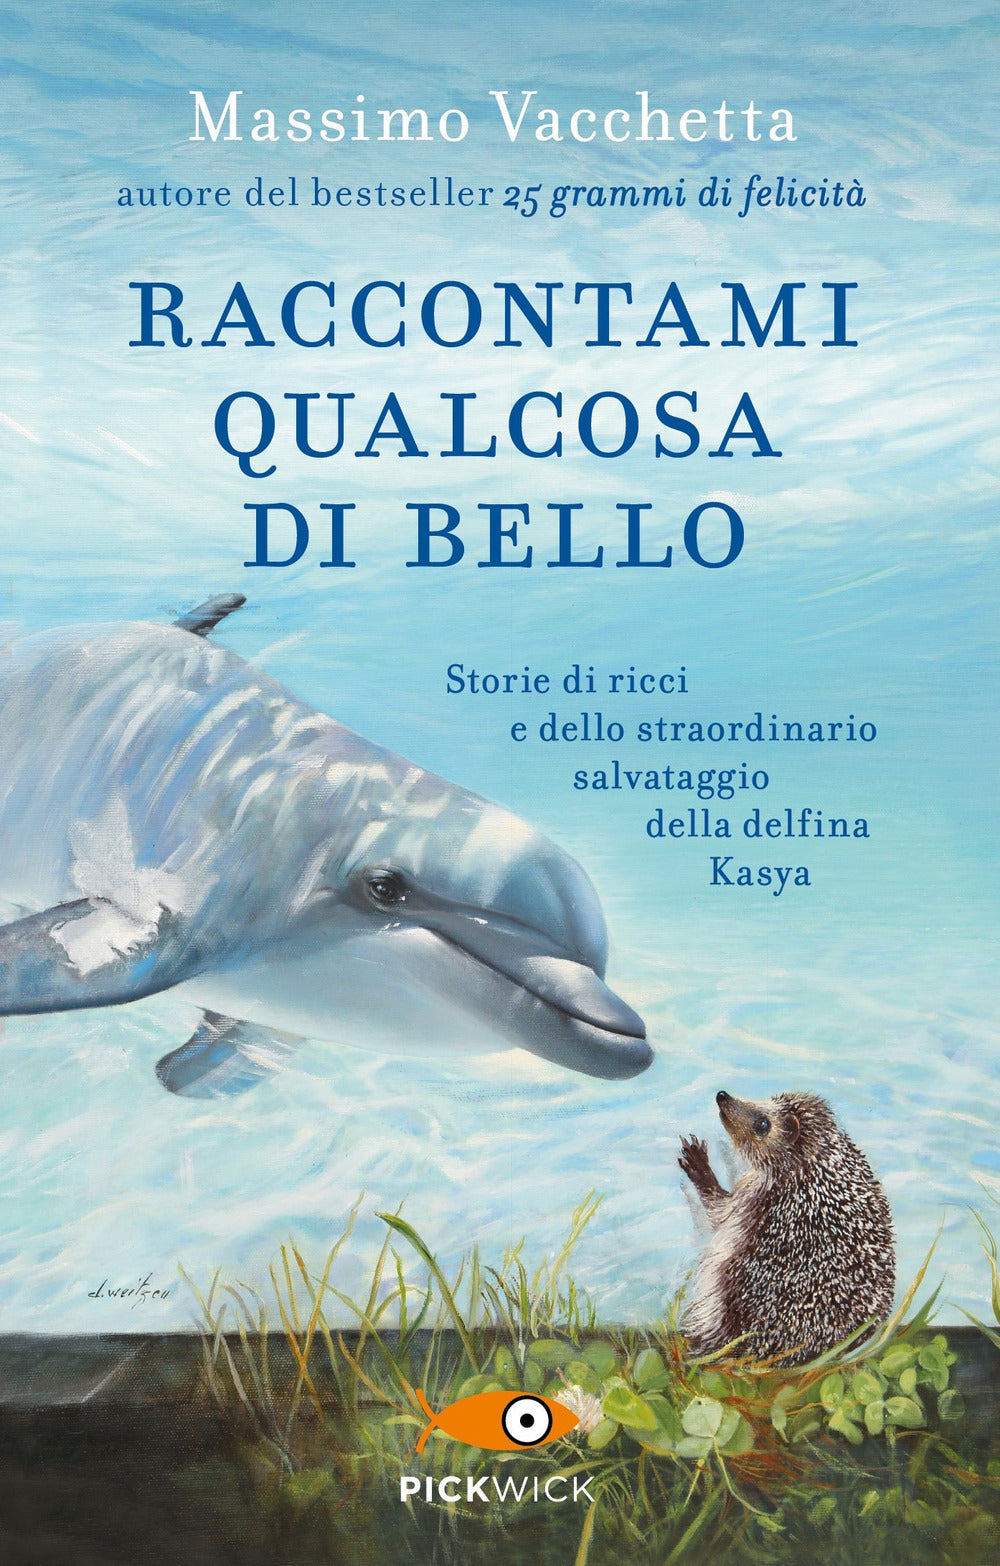 Raccontami qualcosa di bello. Storie di ricci e dello straordinario salvataggio della delfina Kasya.